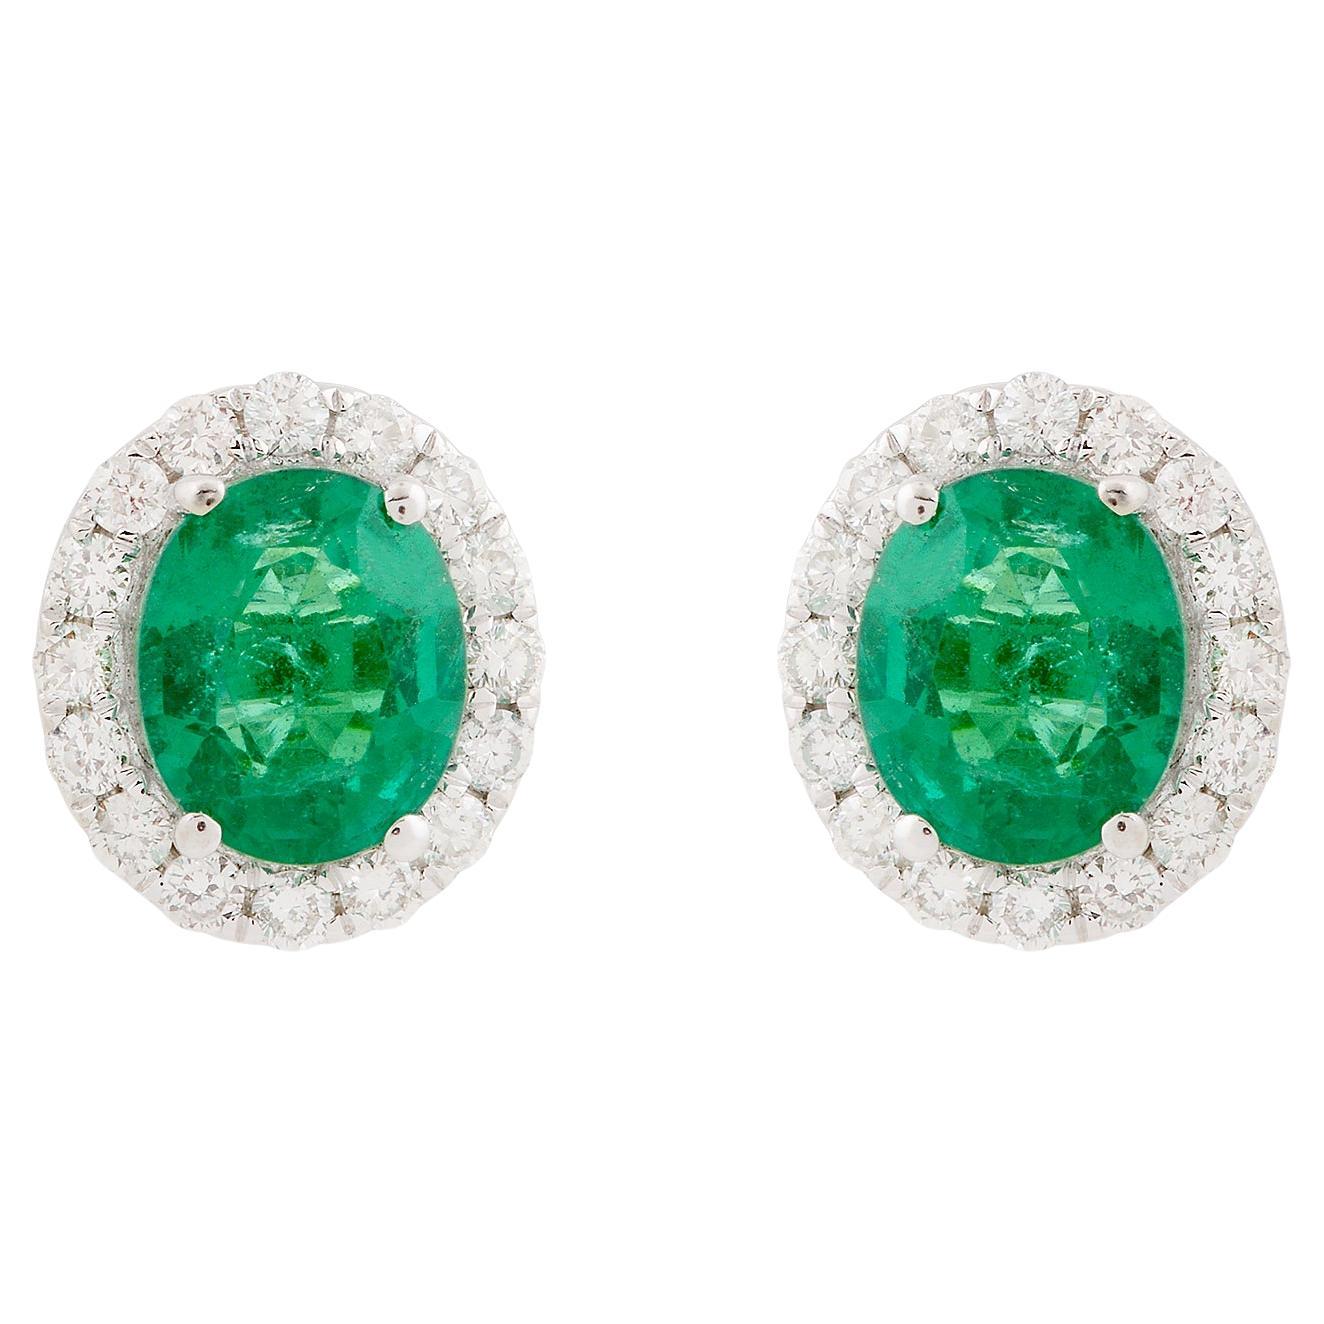 Oval Zambian Emerald Gemstone Stud Earrings Diamond 14 Karat White Gold Jewelry For Sale